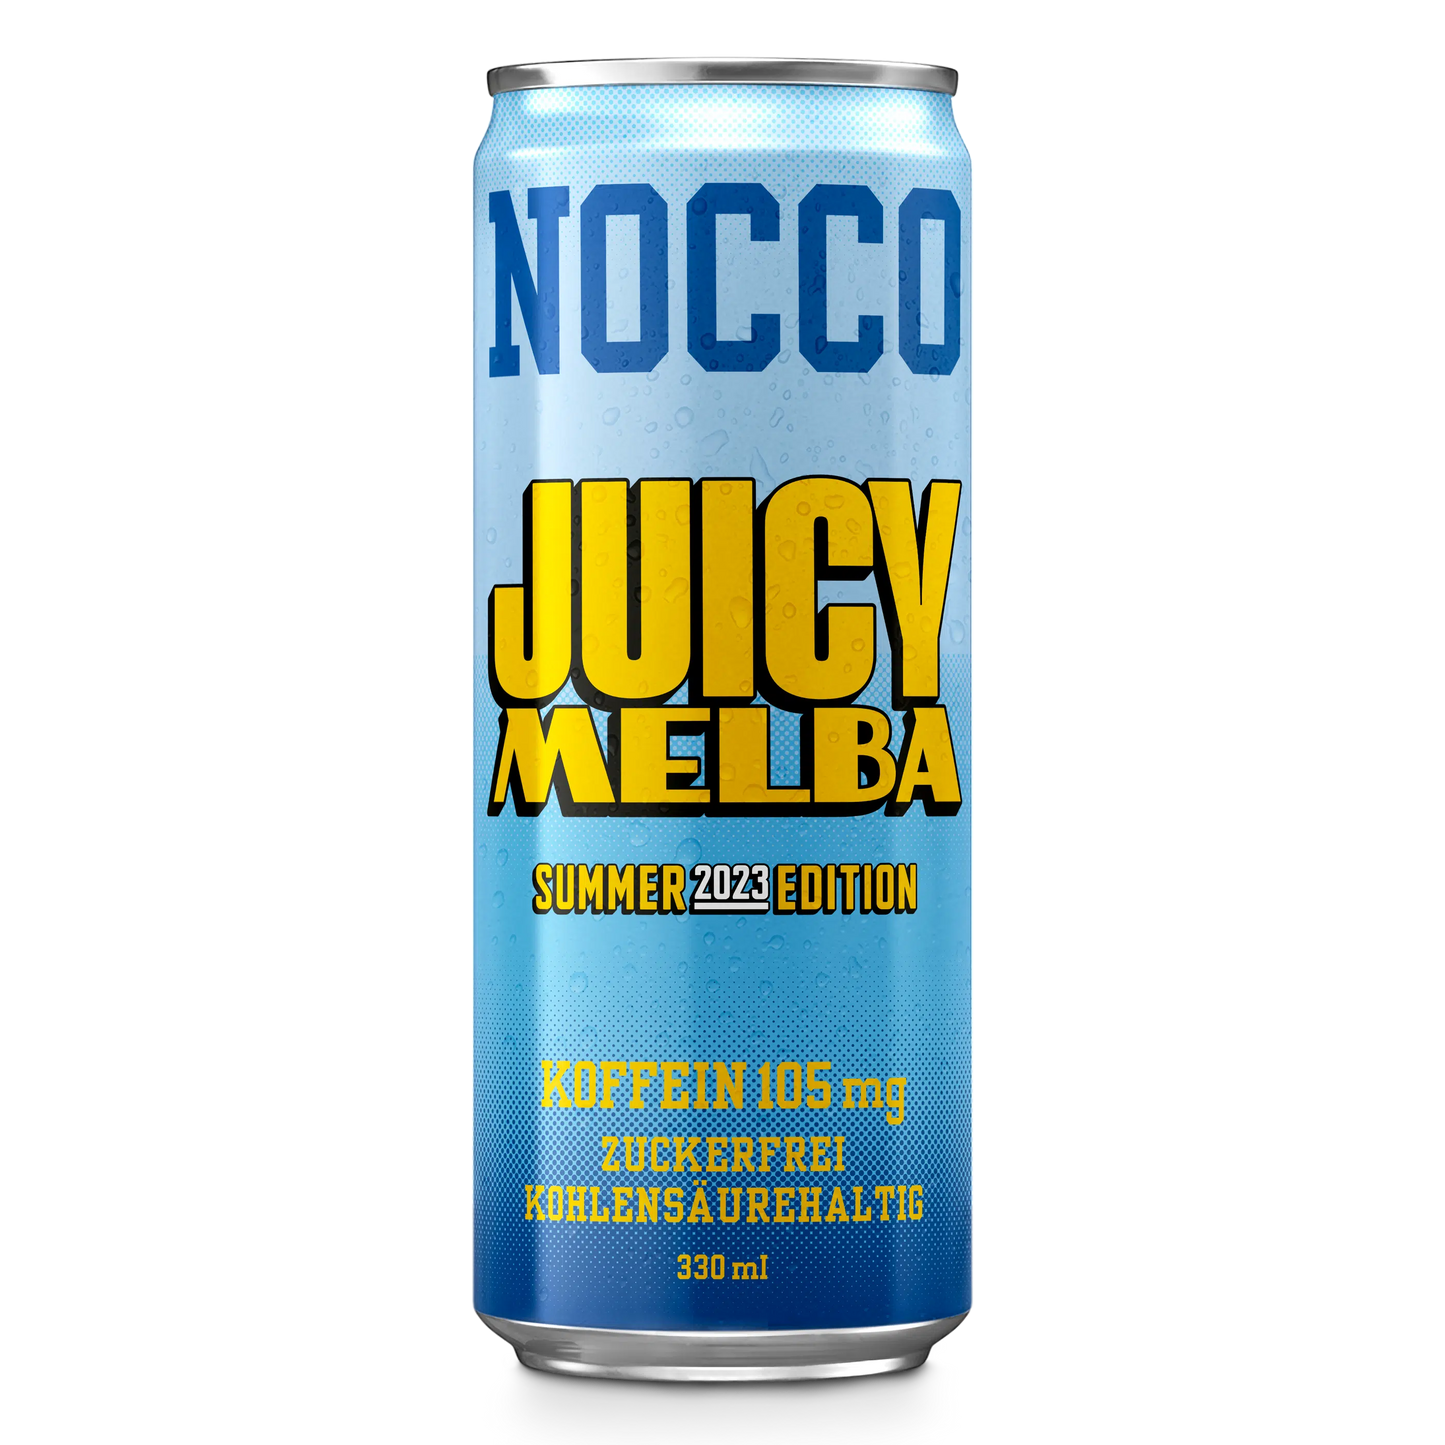 NOCCO Juicy Melba - 330ml